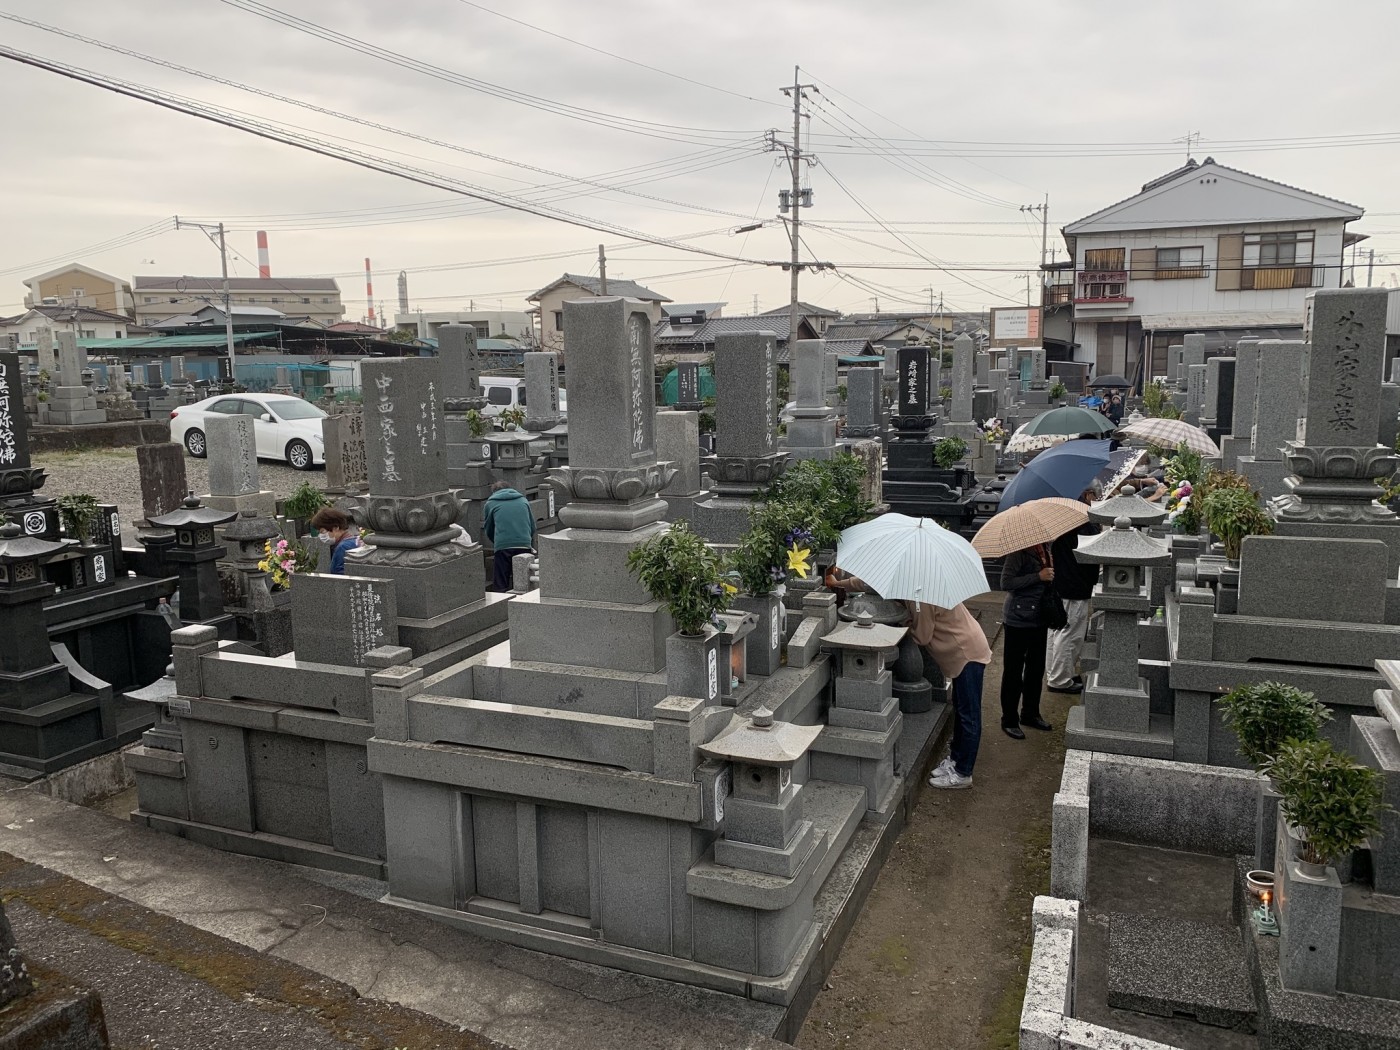 お彼岸のお中日に円光寺墓地でお勤めしました。傘の花がたくさん咲きました。(2021.3.20.7:30)